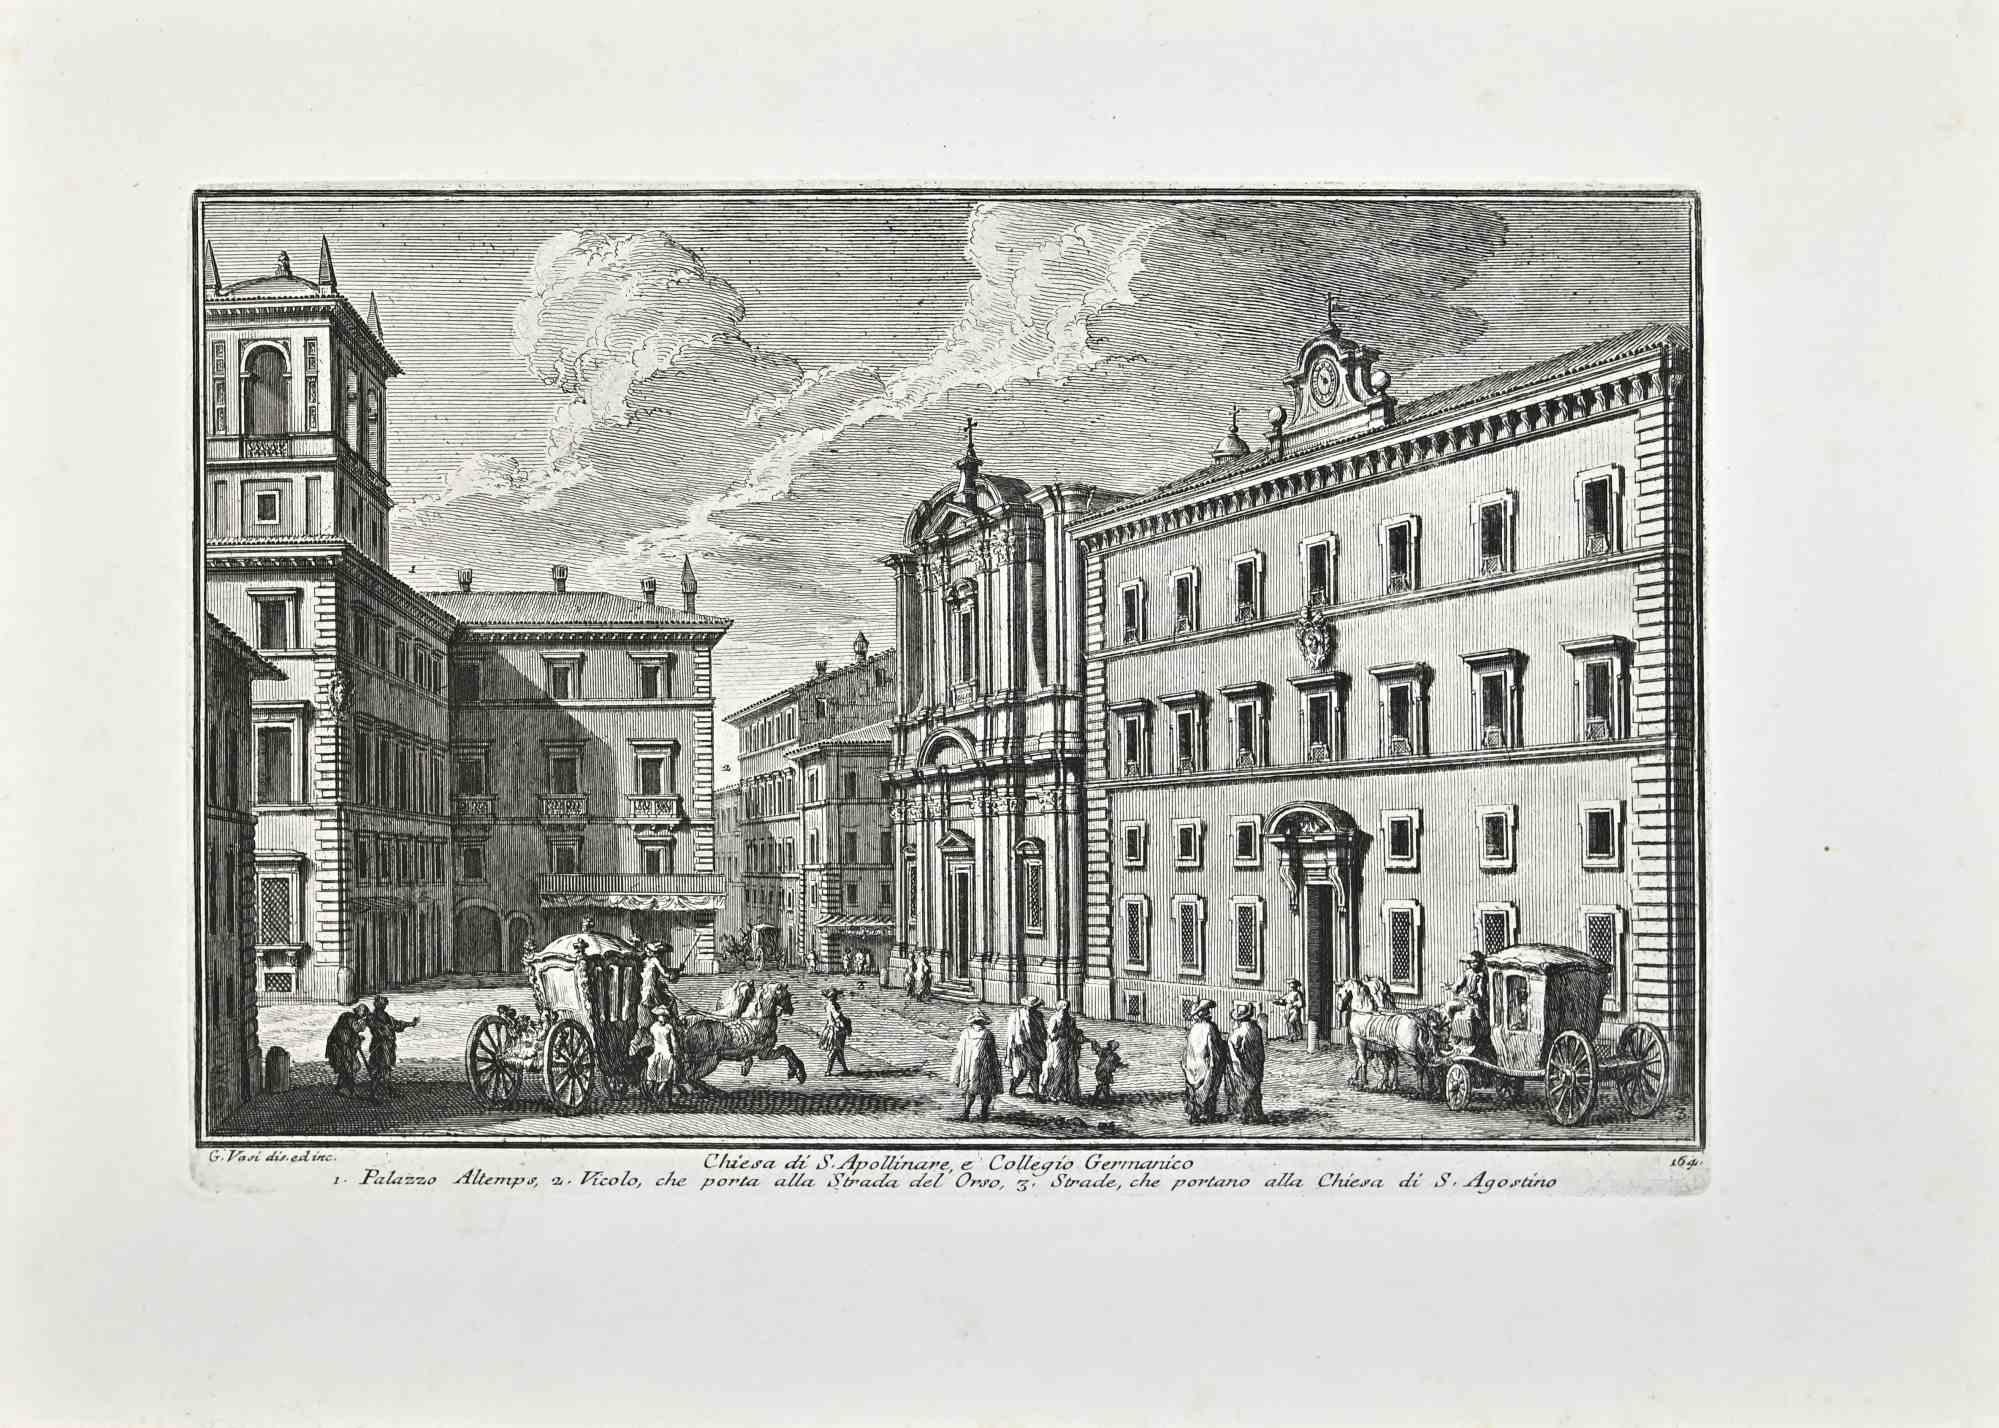 Chiesa di S.Apollinare ist eine Original-Radierung aus dem späten 18. Jahrhundert von Giuseppe Vasi.

Signiert und betitelt am unteren Rand der Platte. 

Gute Bedingungen.

Giuseppe Vasi  (Corleone, 1710 - Rom, 1782) war ein Graveur, Architekt und